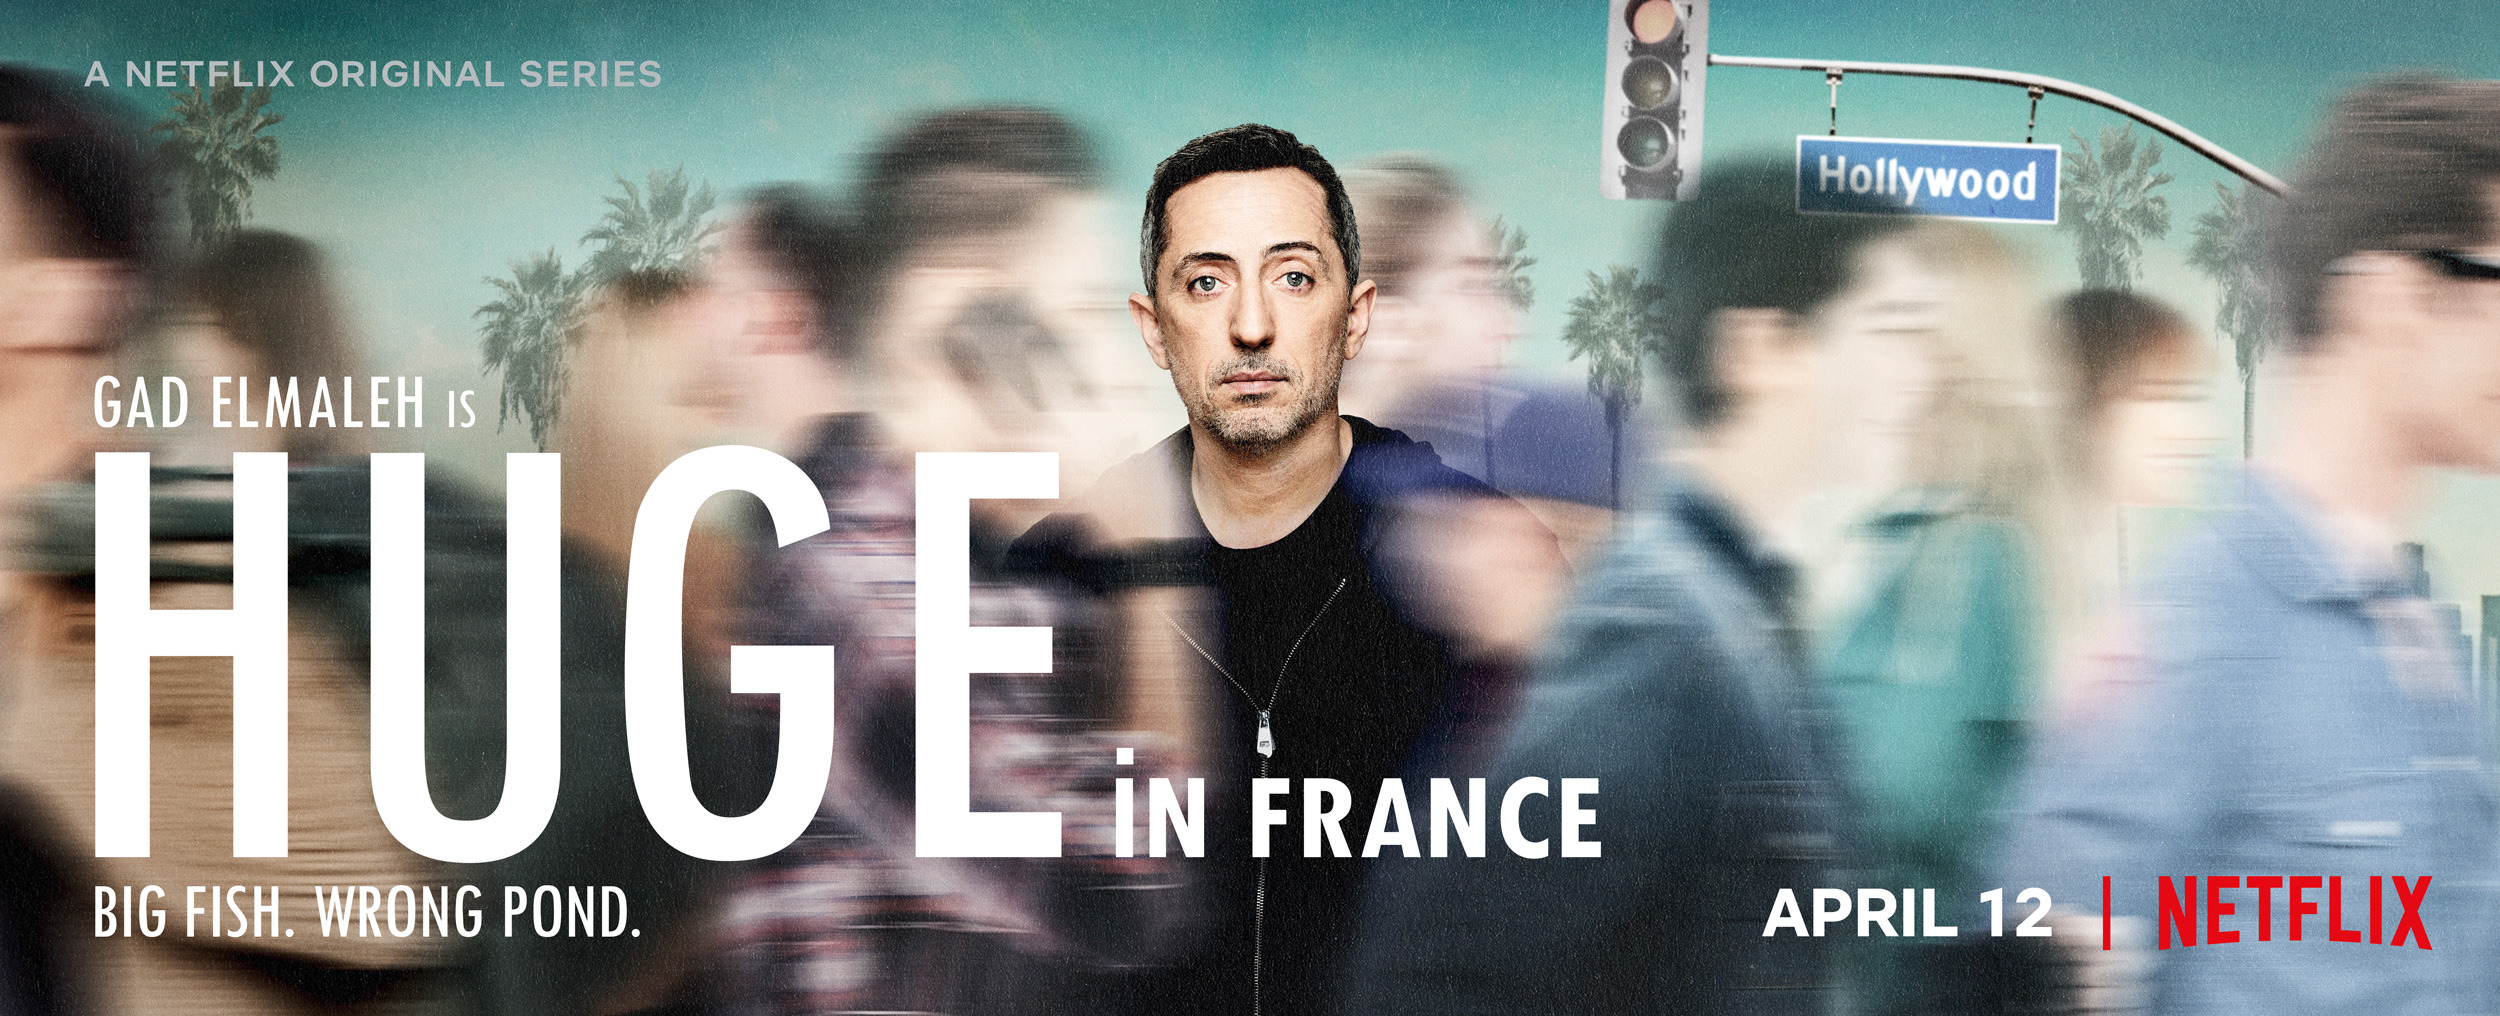 Mega Sized TV Poster Image for Huge in France (#2 of 2)